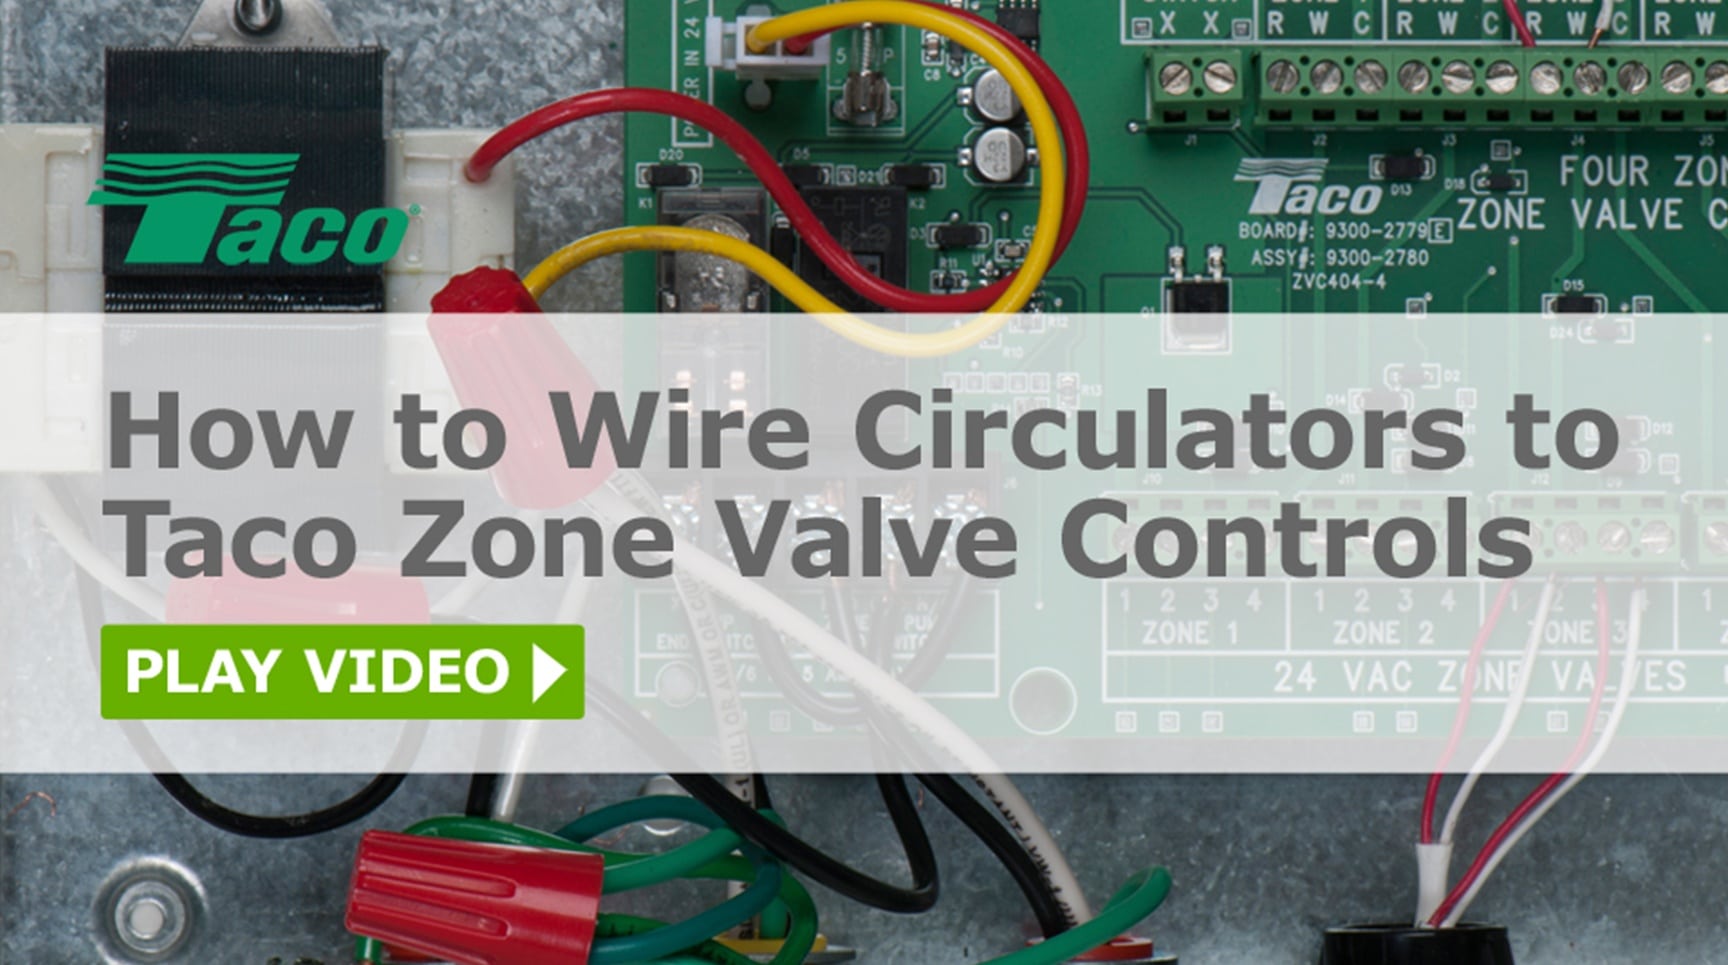 Wire-Circulators-Zone-Valve-Controls